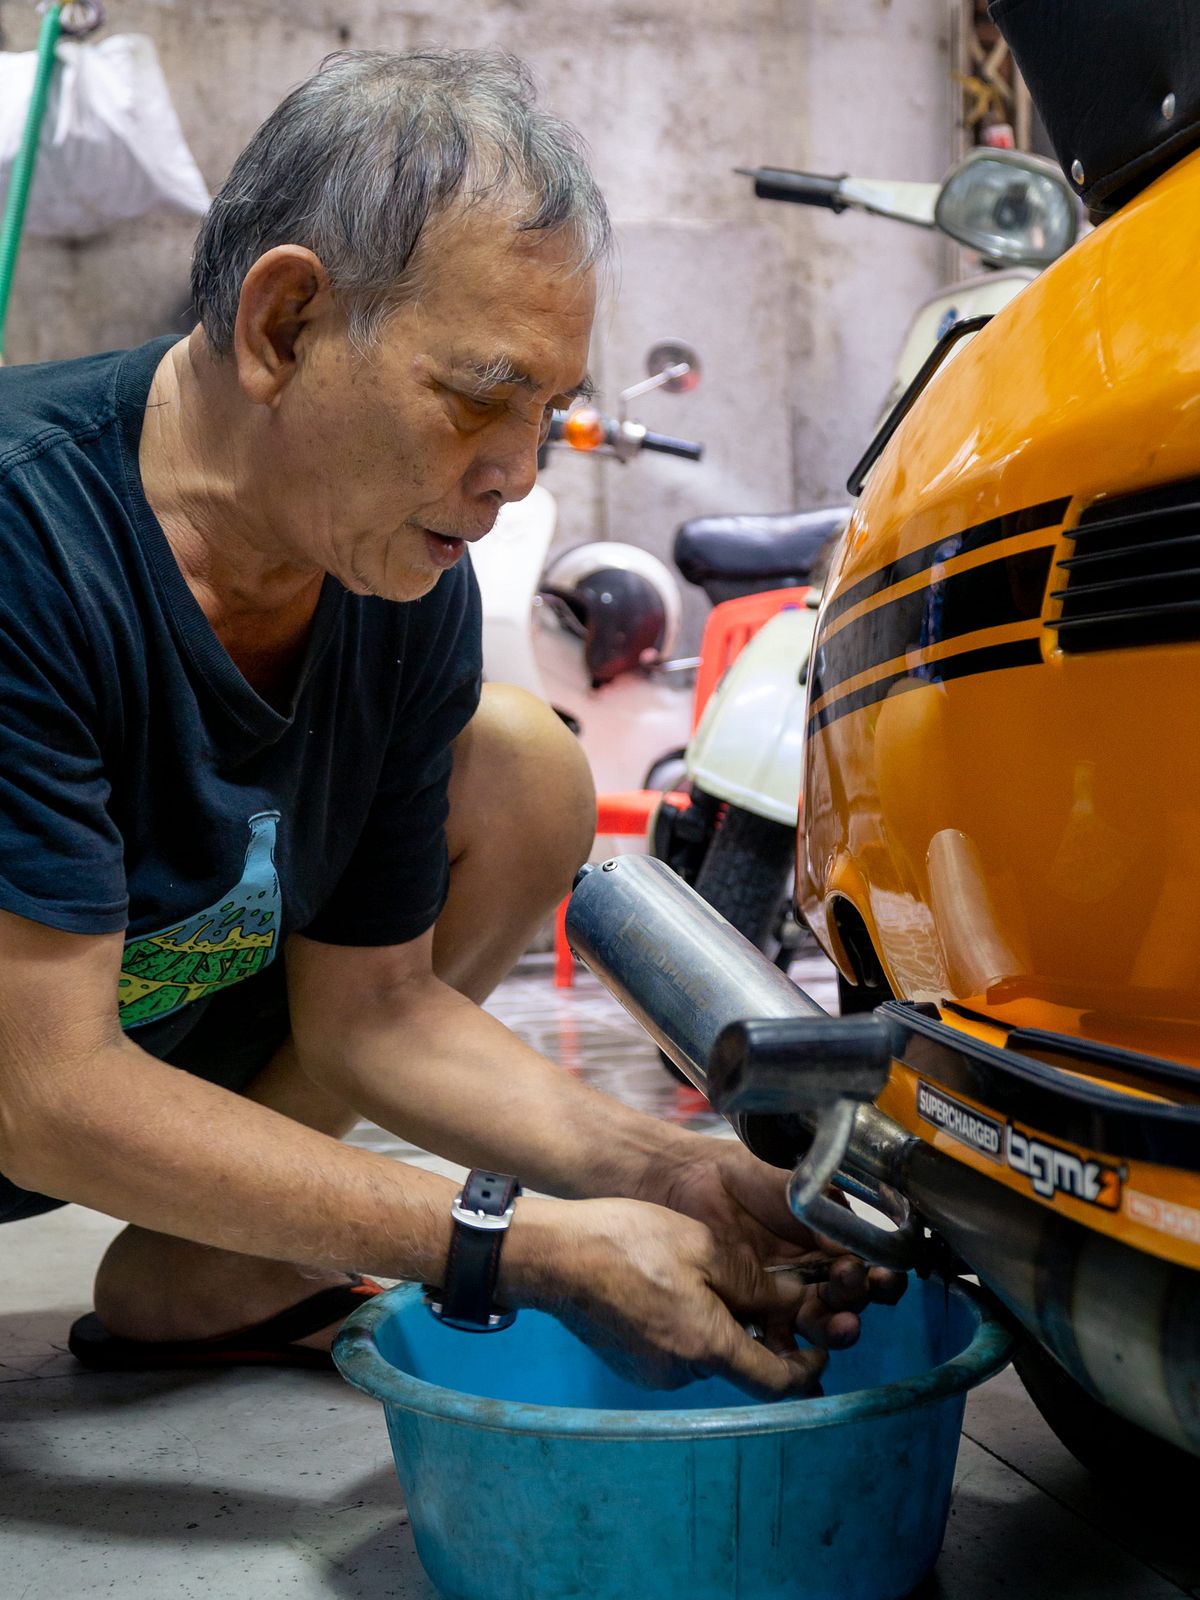 Sửa xe Vespa Sprint chuyên nghiệp tại HCM  Sửa Chữa Bảo Dưỡng Tân Trang  Xe Uy Tín Đẳng Cấp Tại TPHCM